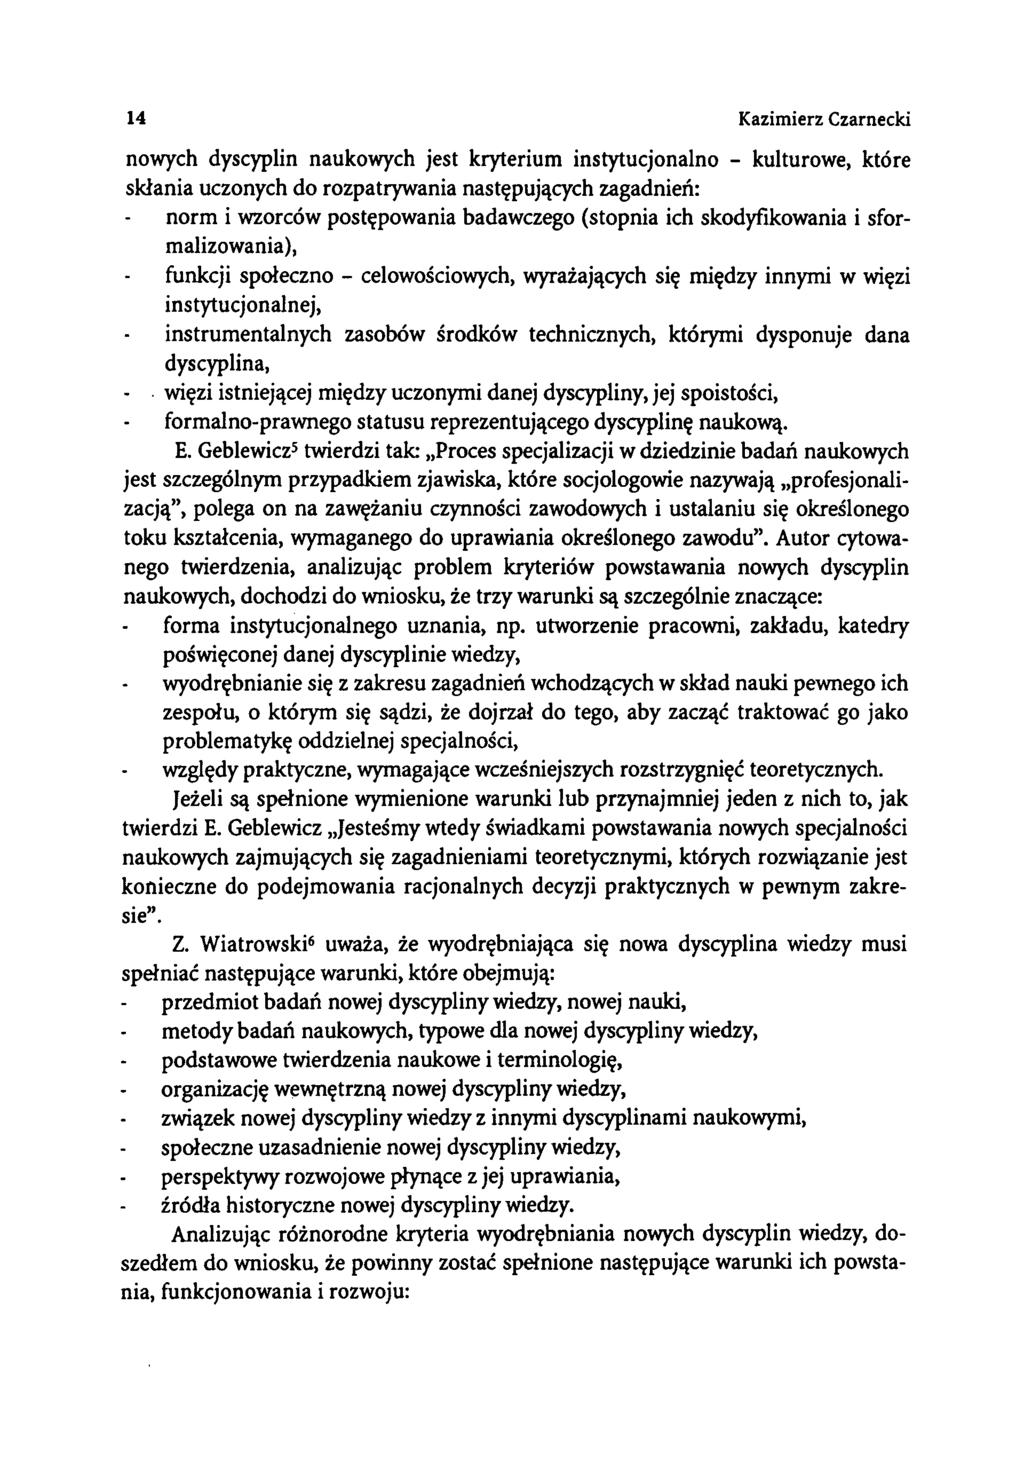 14 Kazimierz Czarnecki nowych dyscyplin naukowych jest kryterium instytucjonalno - kulturowe, które skłania uczonych do rozpatrywania następujących zagadnień: norm i wzorców postępowania badawczego